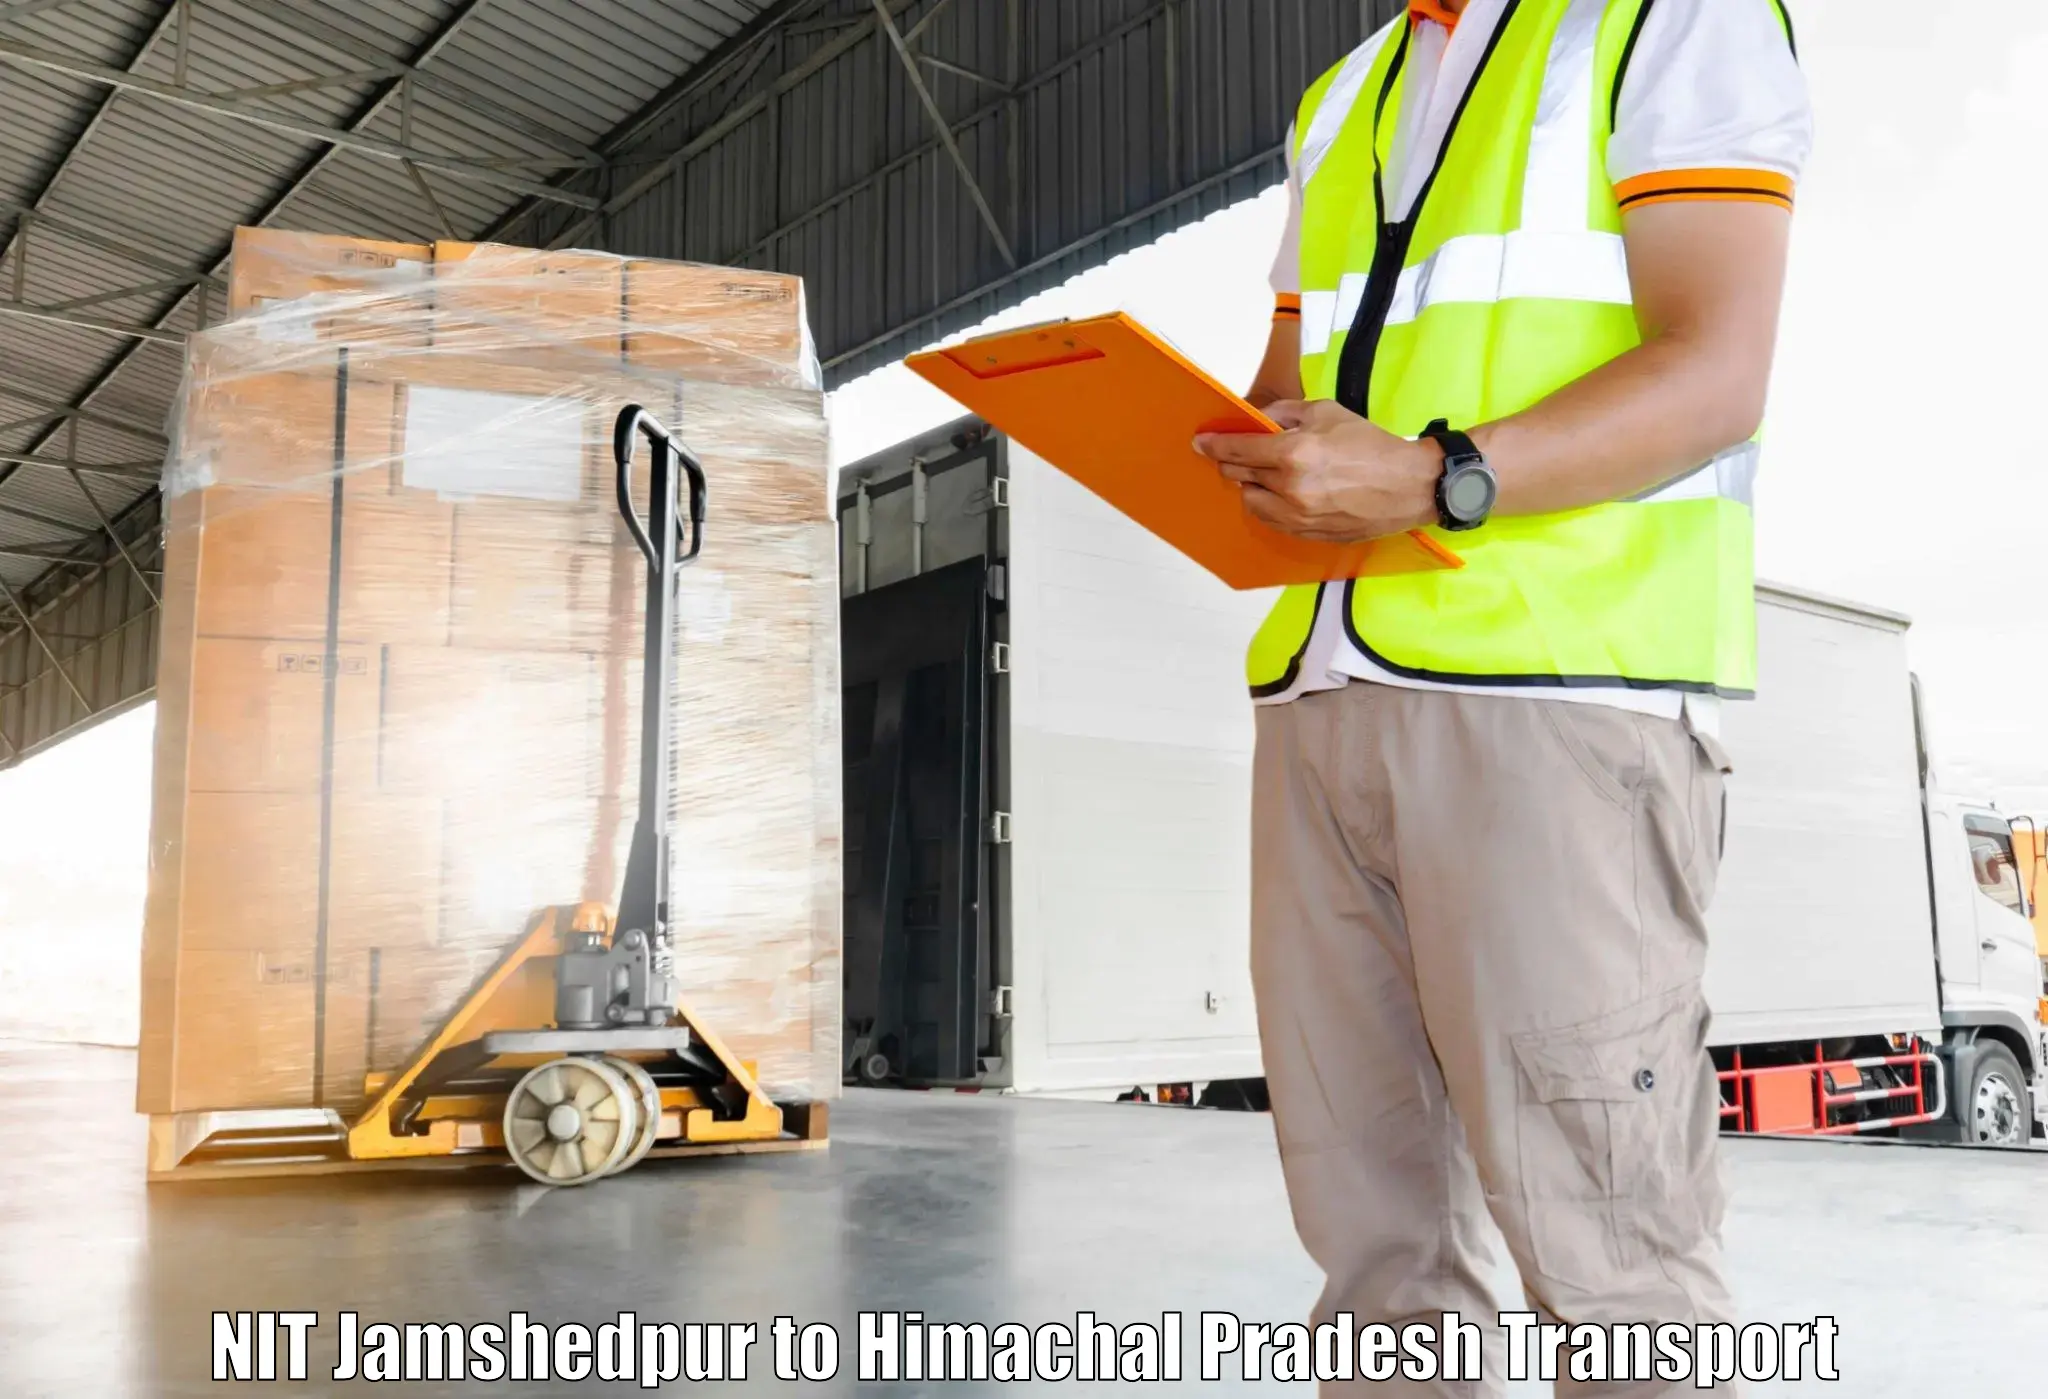 Cargo transportation services in NIT Jamshedpur to Kotkhai